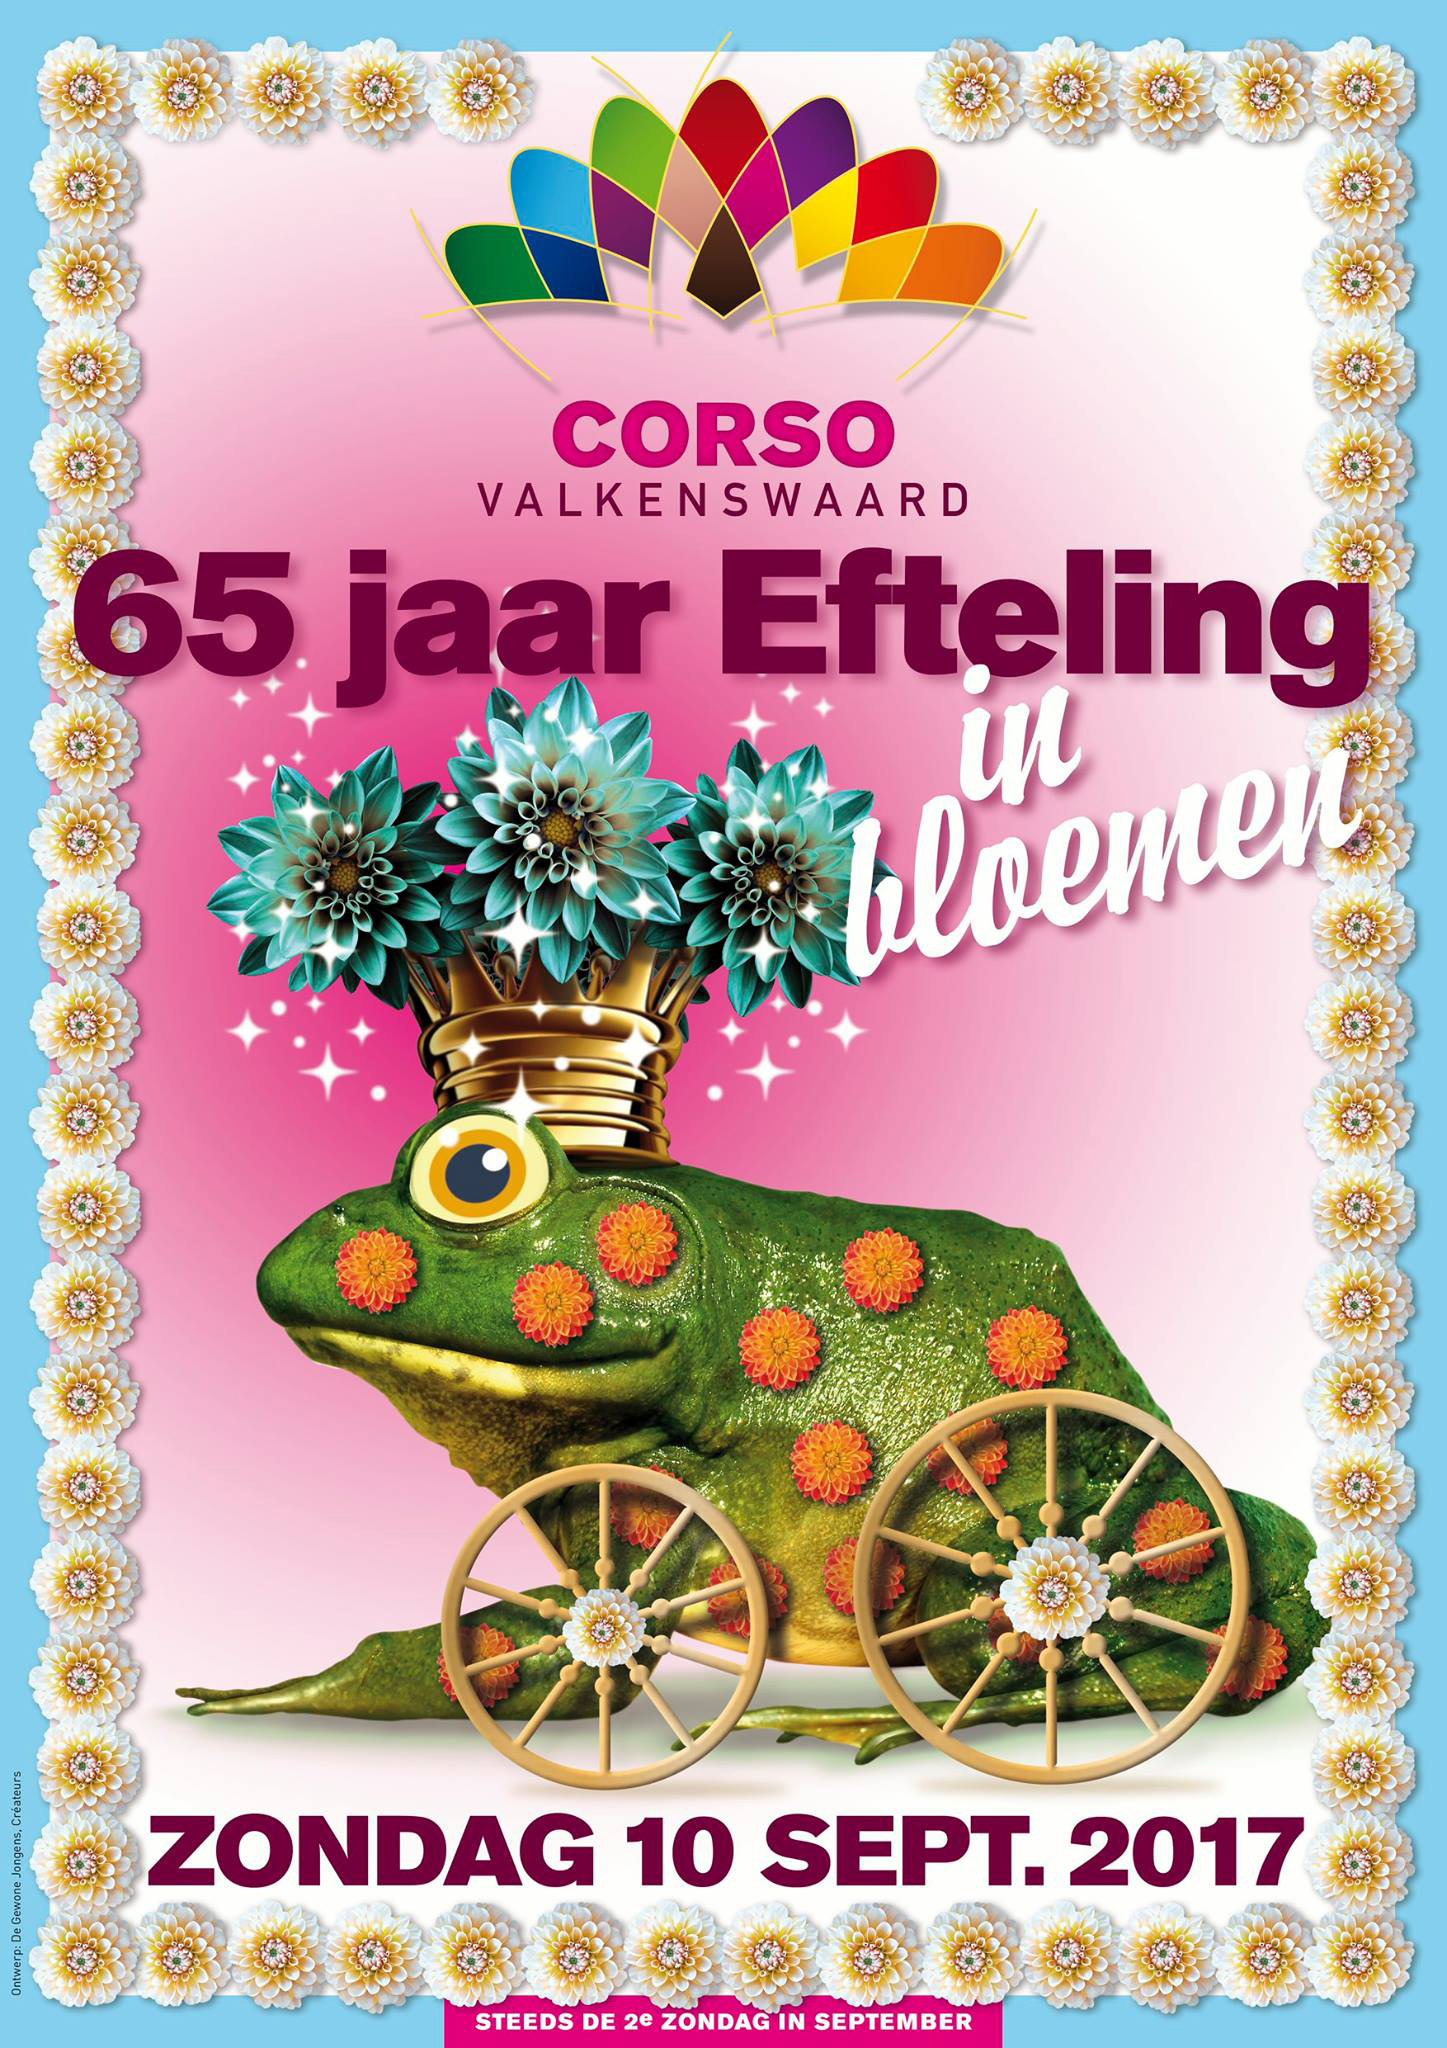 CorsoNetwerk / Corso Valkenswaard 2017: 65 jaar Efteling in bloemen